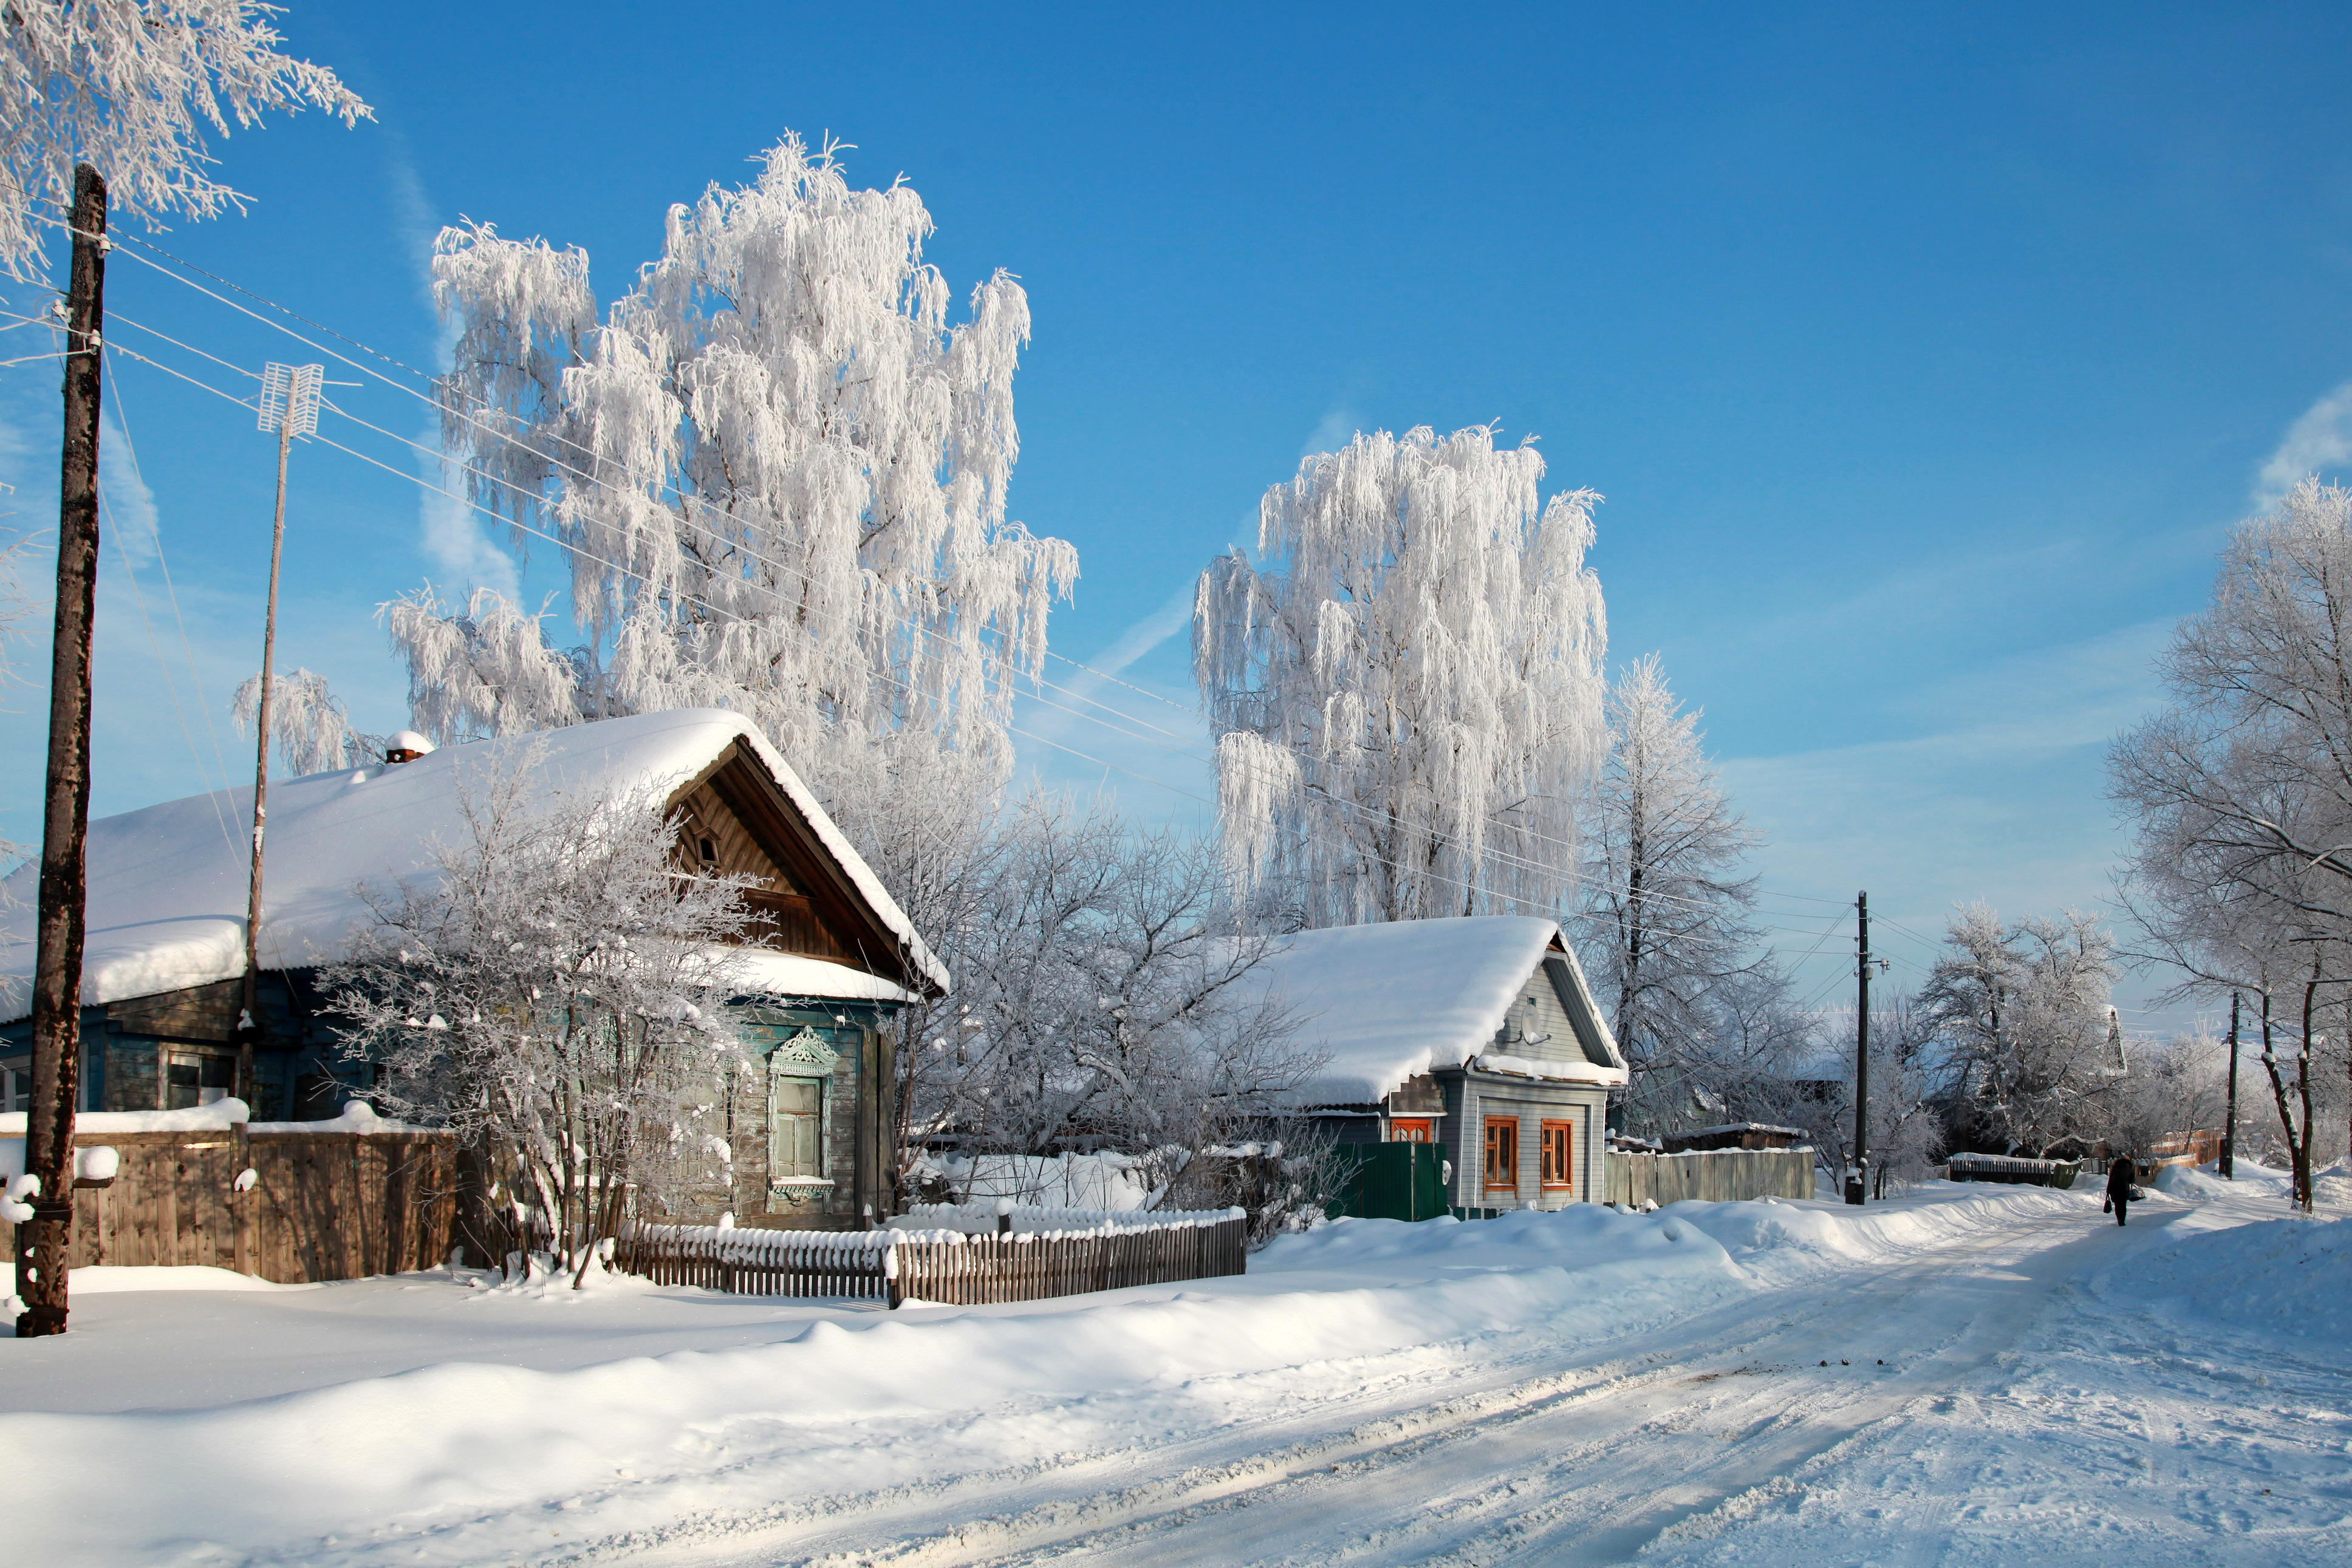  деревня зимой
